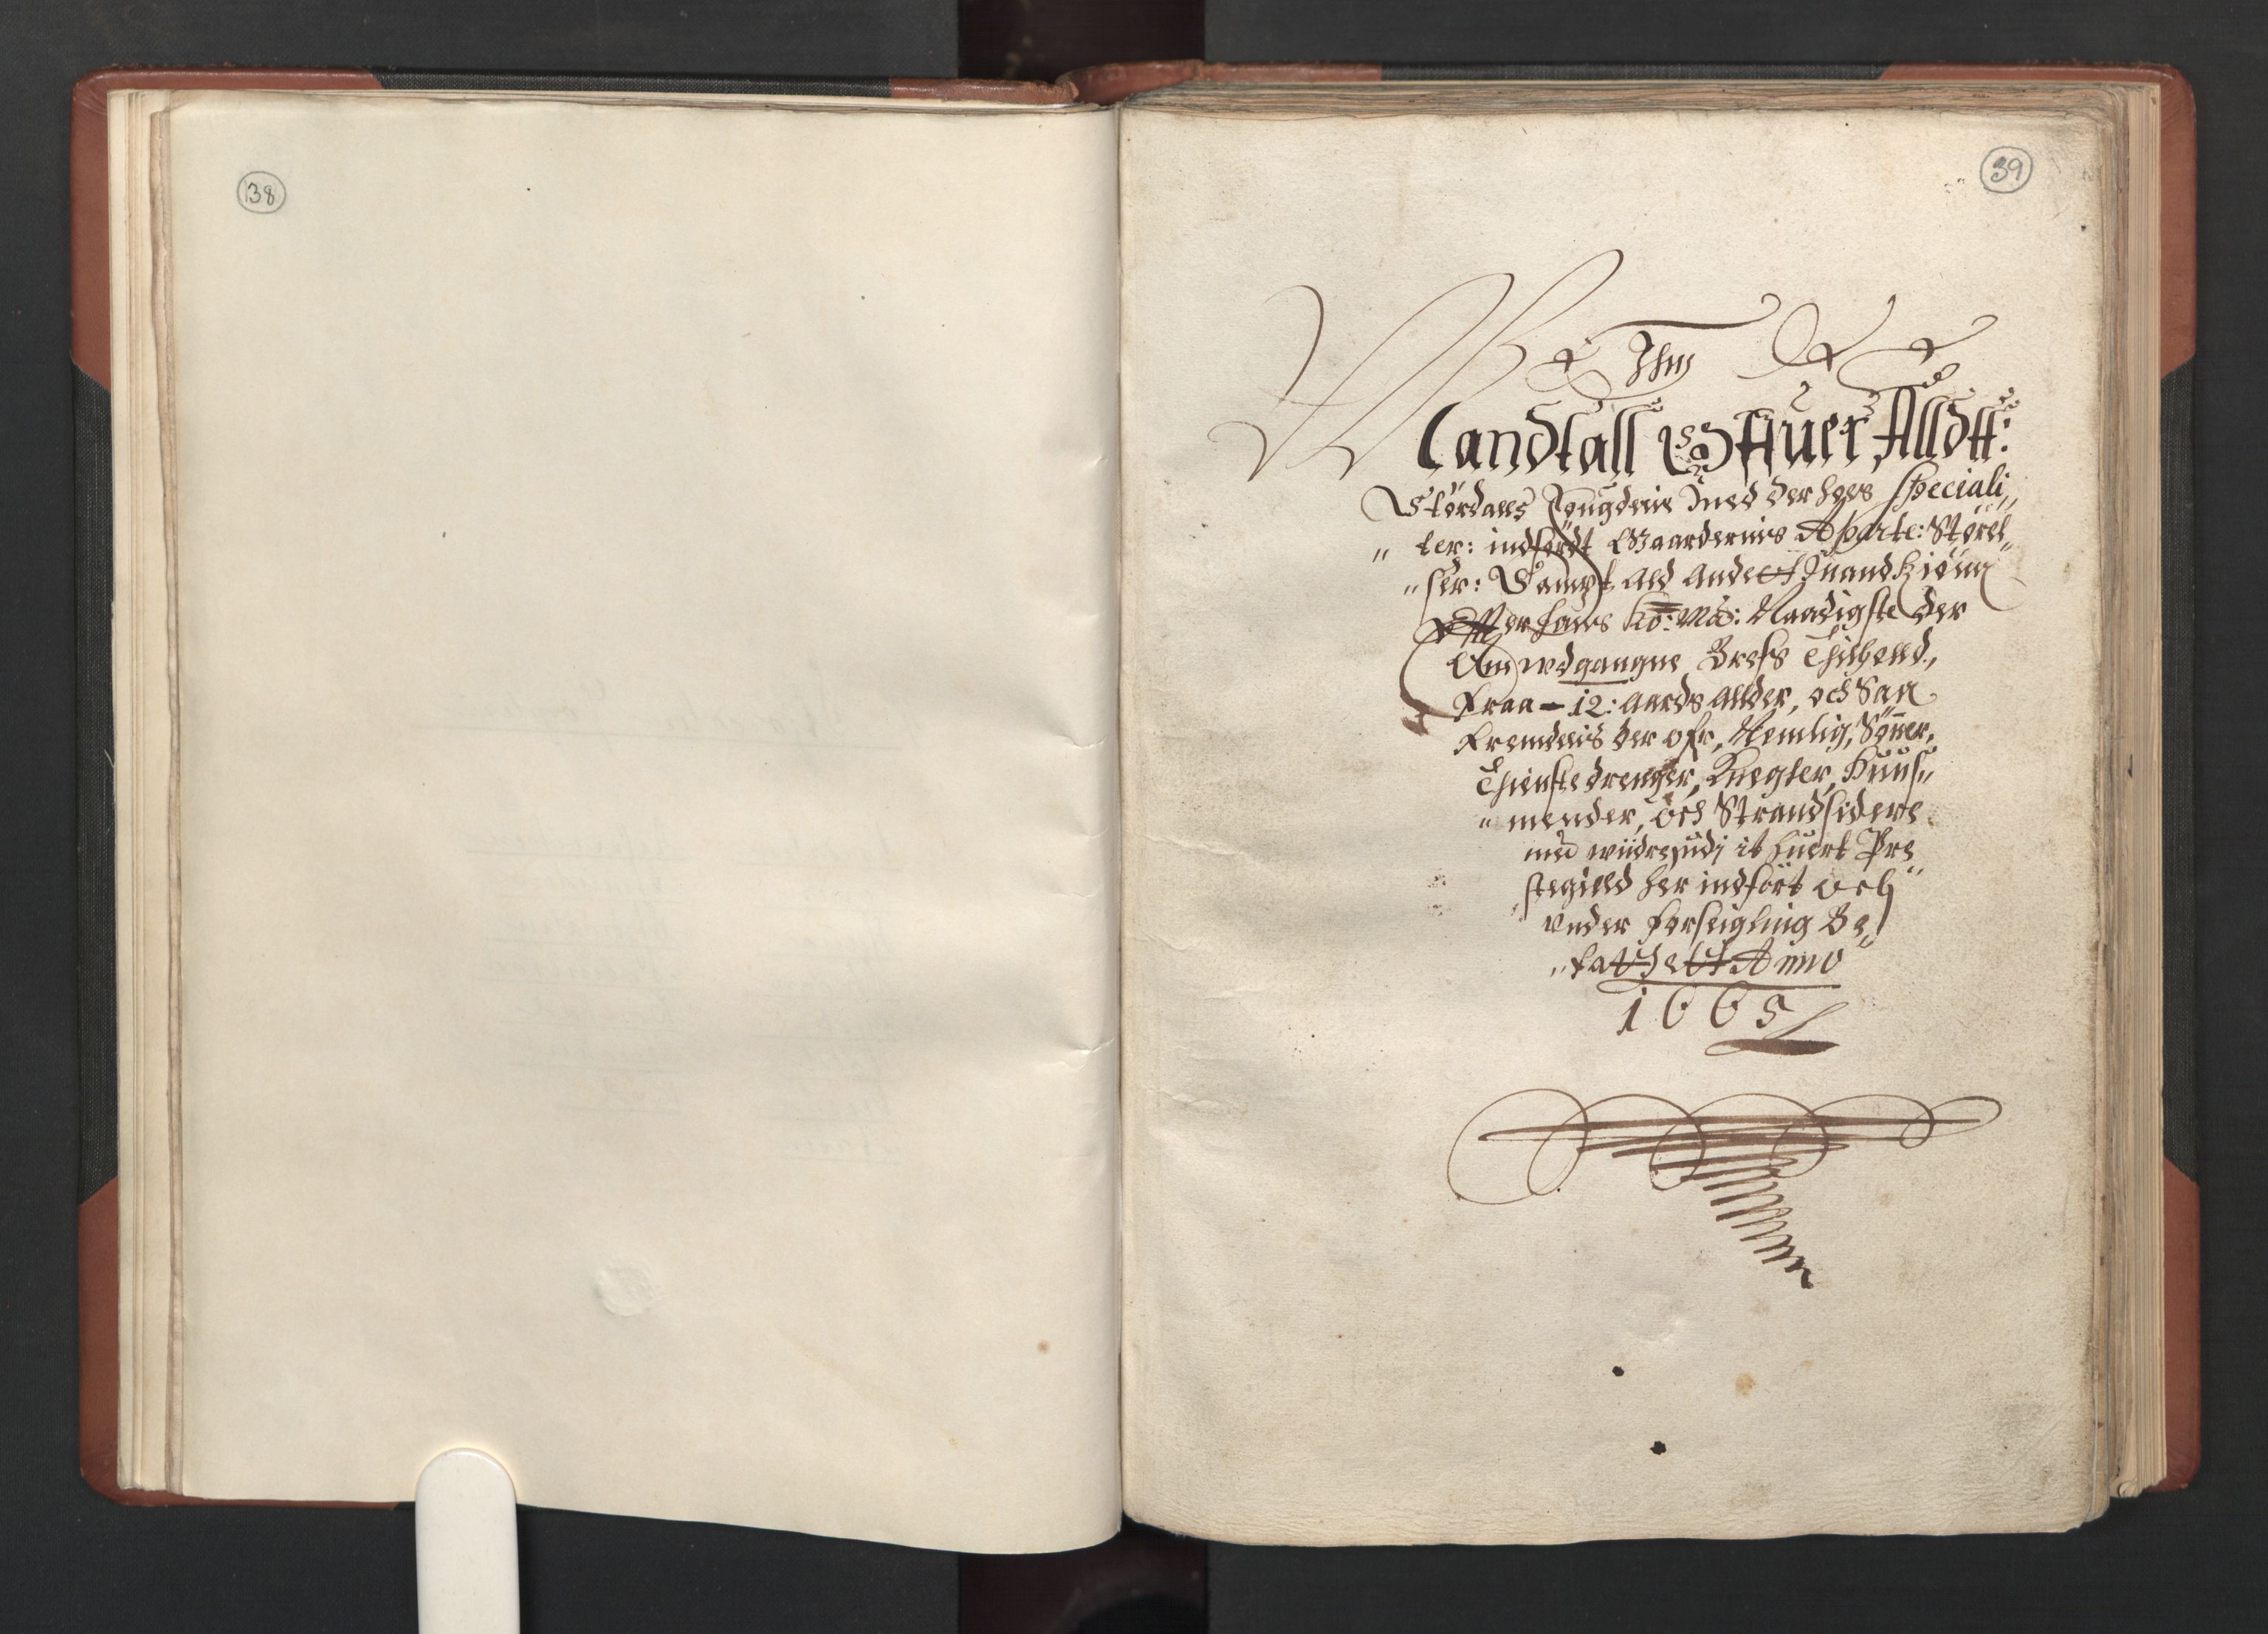 RA, Bailiff's Census 1664-1666, no. 19: Fosen fogderi, Inderøy fogderi, Selbu fogderi, Namdal fogderi and Stjørdal fogderi, 1664-1665, p. 38-39